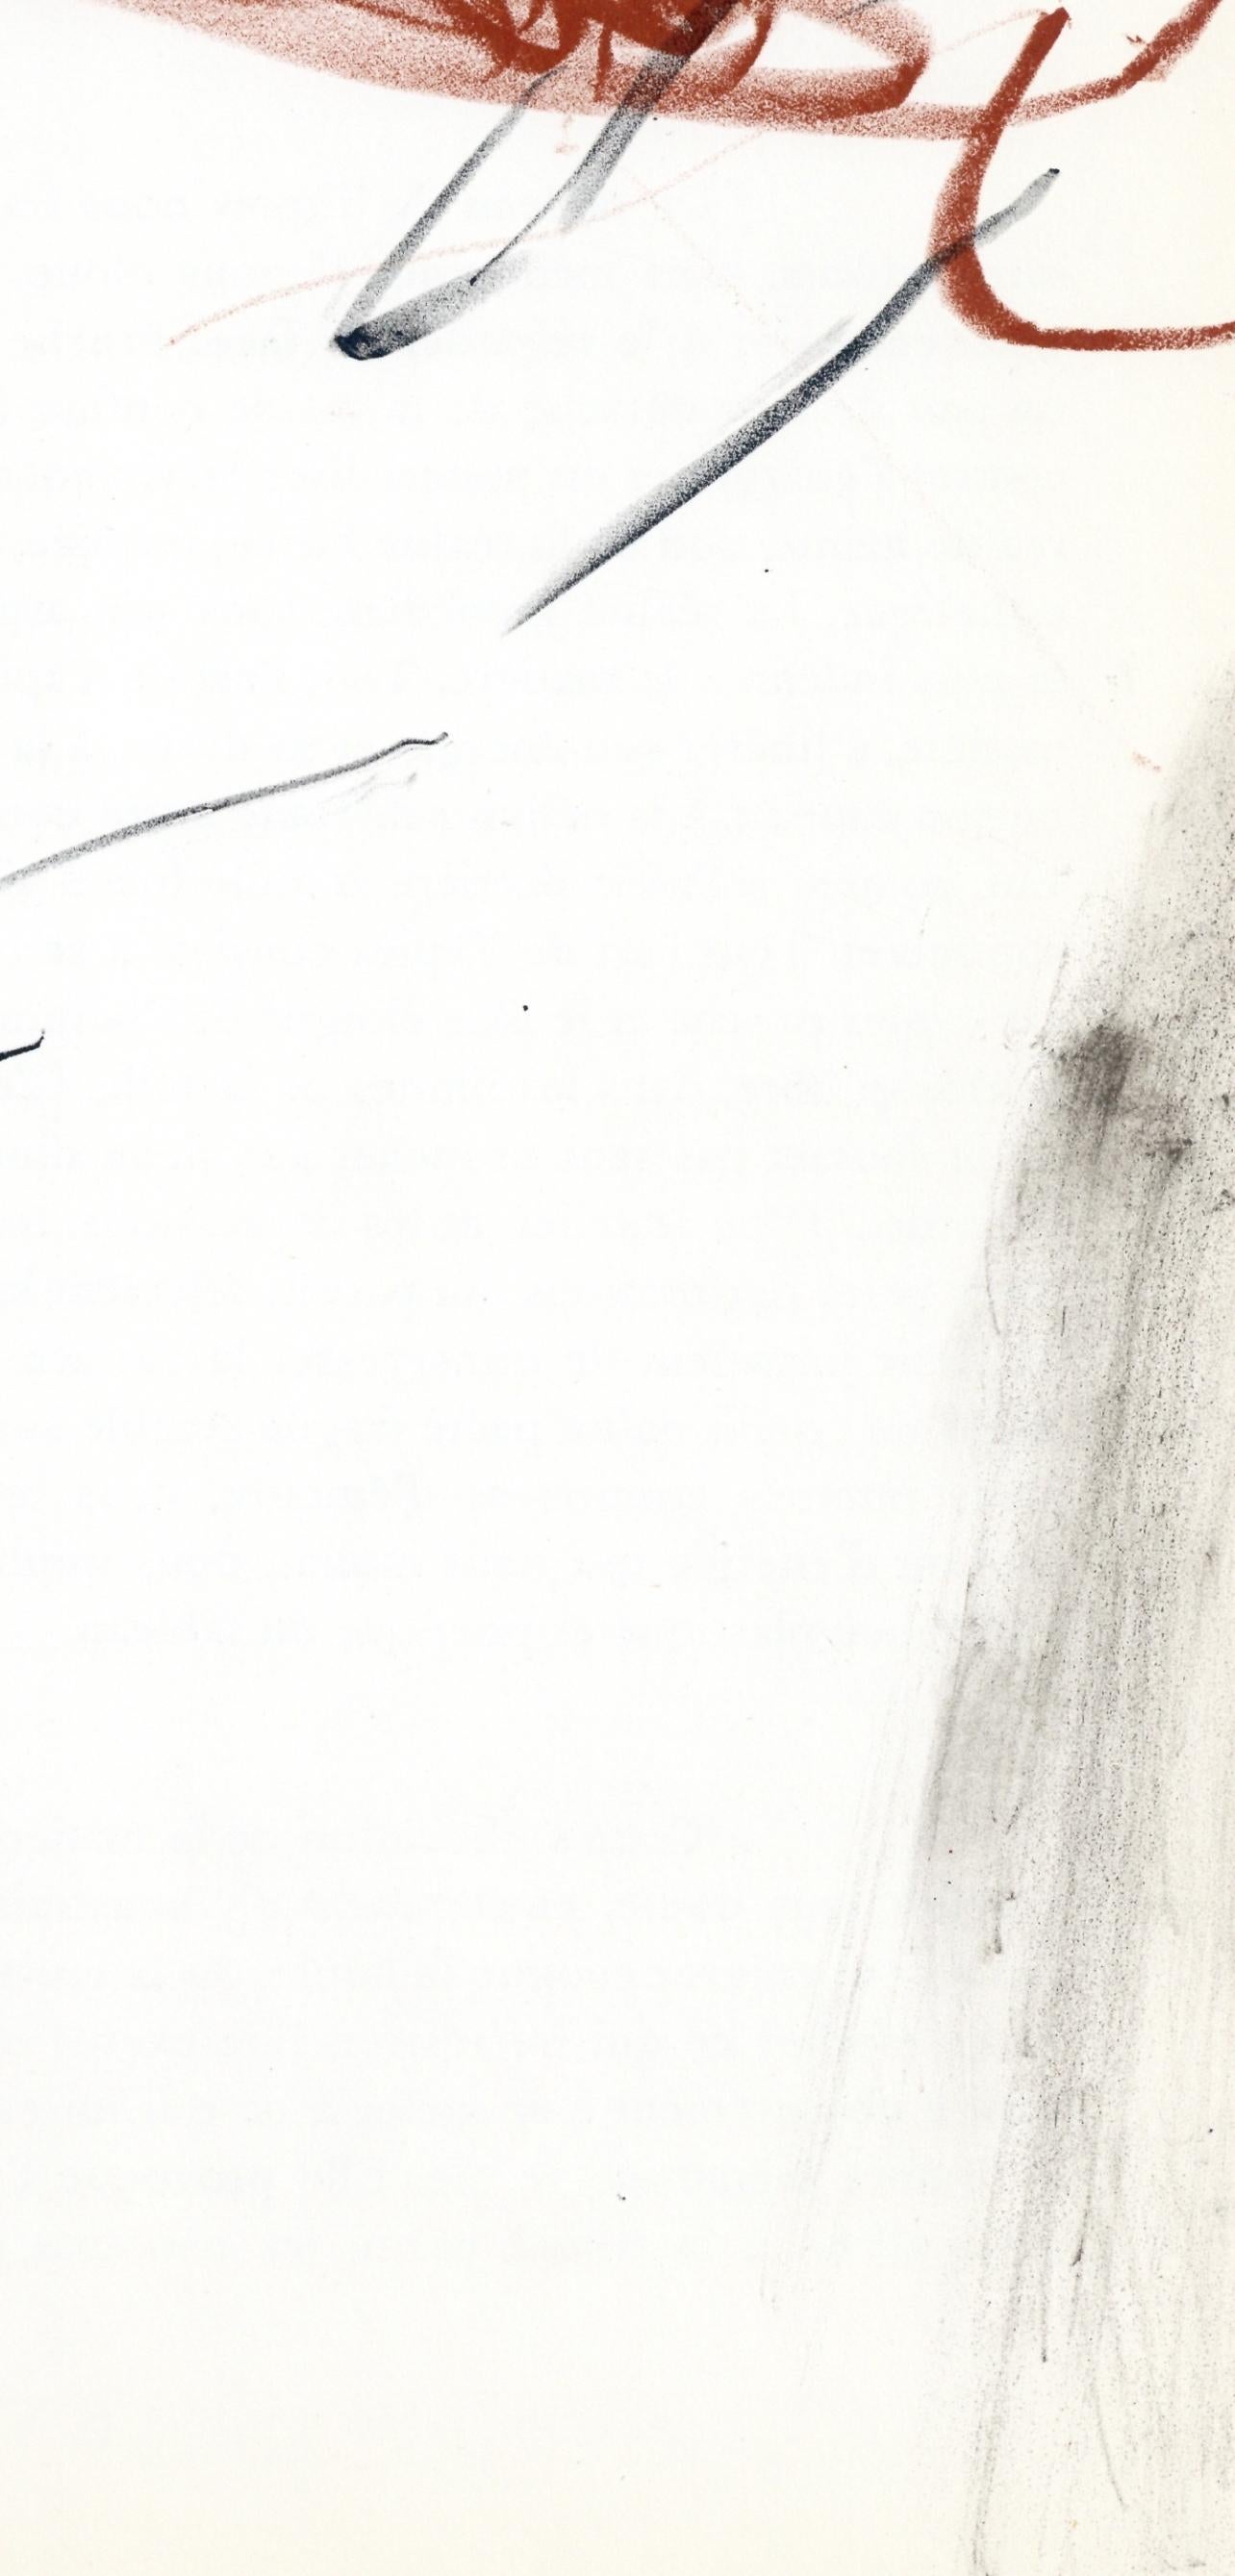 Lithographie sur papier vélin. Inscription : Non signé et non numéroté. Bon état. Notes : Extrait de Derrière le miroir, N° 168, publié par Derrière le miroir, Paris ; imprimé par la Galerie Maeght, Paris, 1967. Extrait d'un essai de lot de